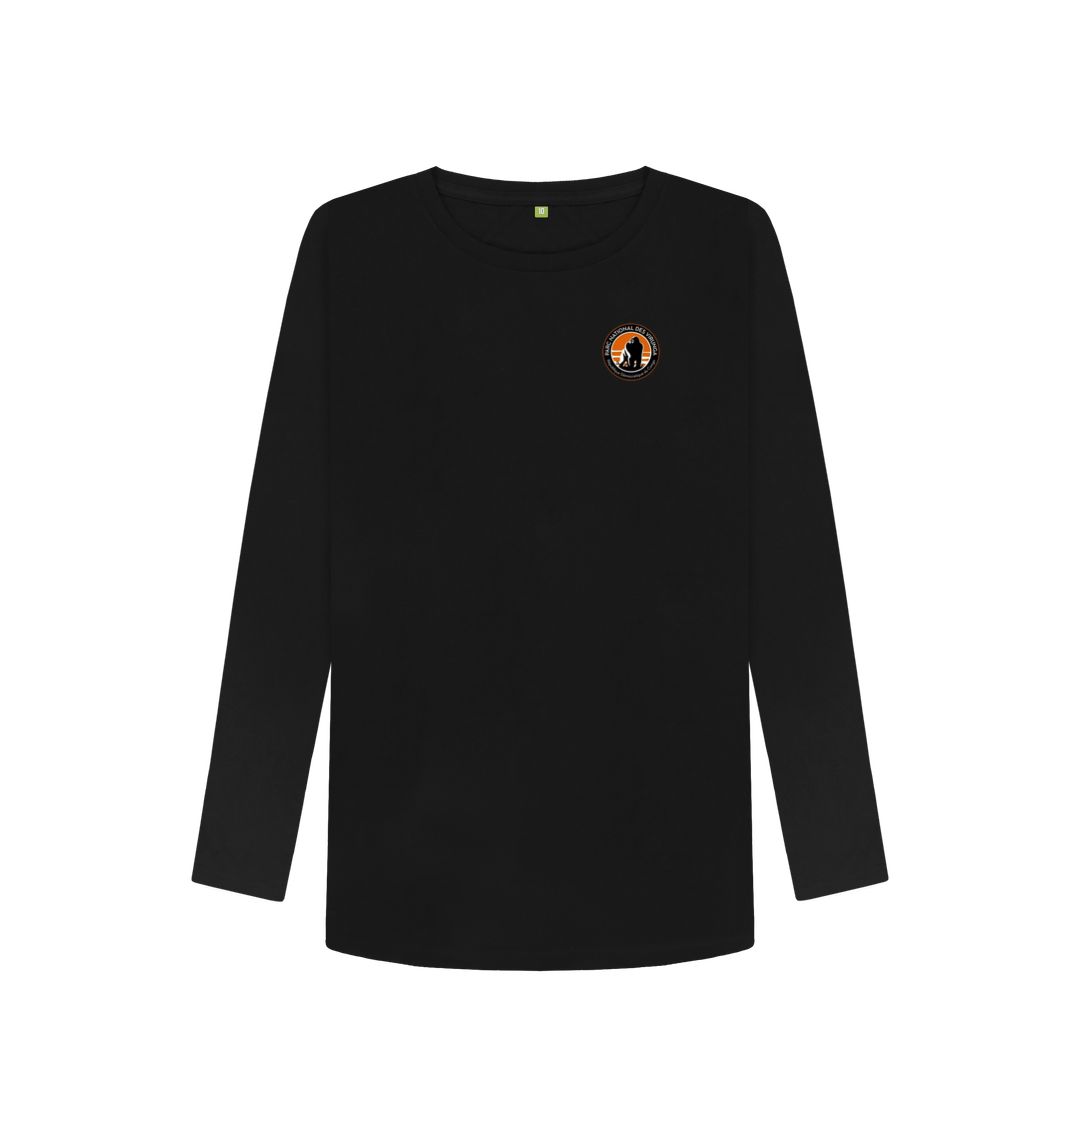 Black Virunga Pocket Logo Women's Long Sleeve T-shirt